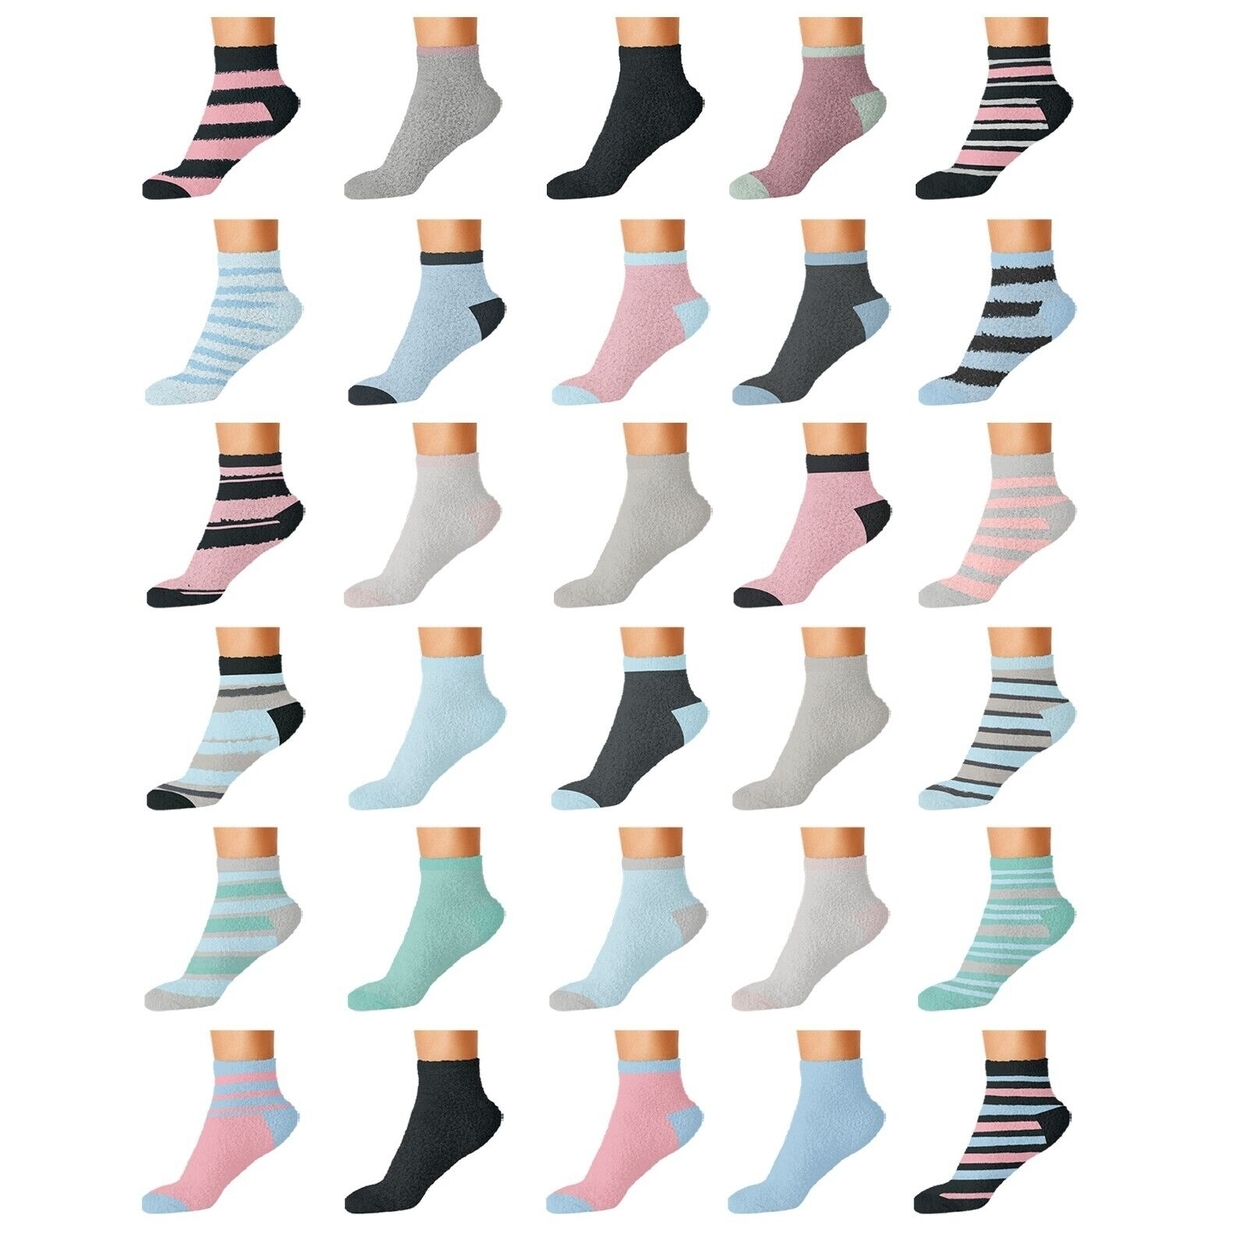 5-Pairs: Women's Cozy Warm Fuzzy Fluffy Crew Socks - Striped